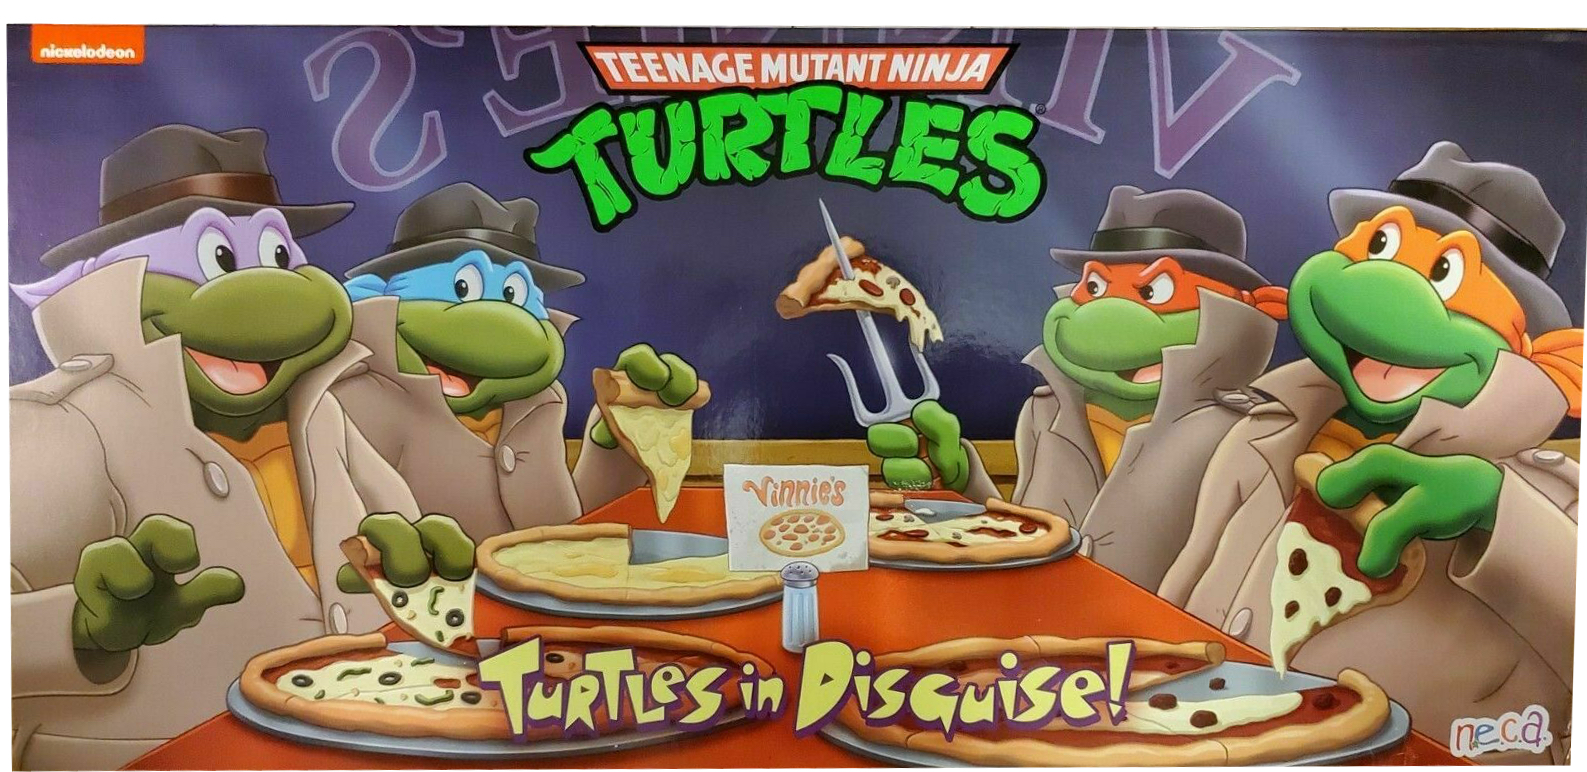 Teenage Mutant Ninja Turtles NECA Animated Series 4 Pack (Cartoon)